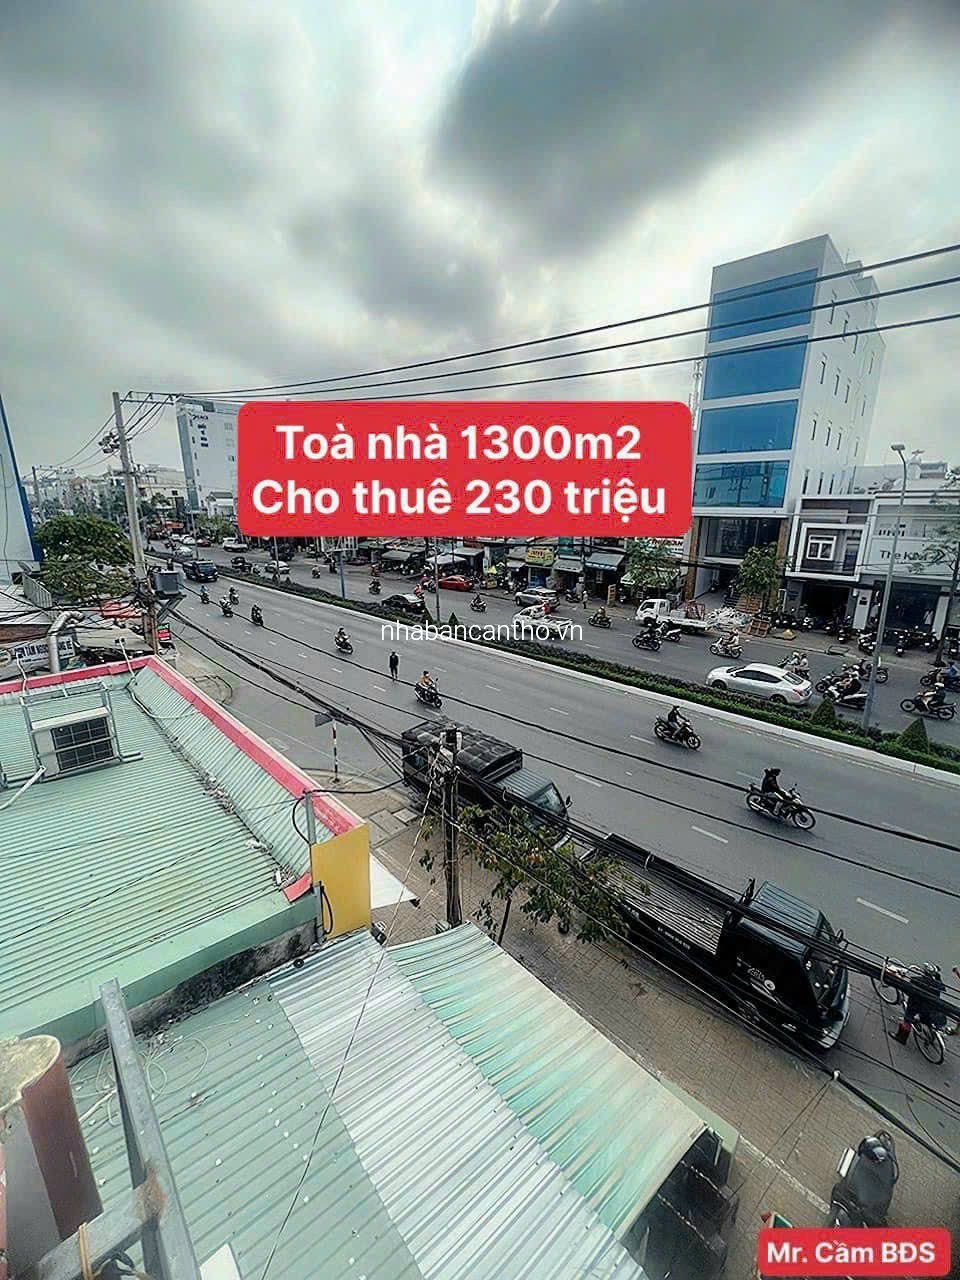 Cho thuê toàn nhà 1300m2 mặt tiền Nguyễn văn cừ